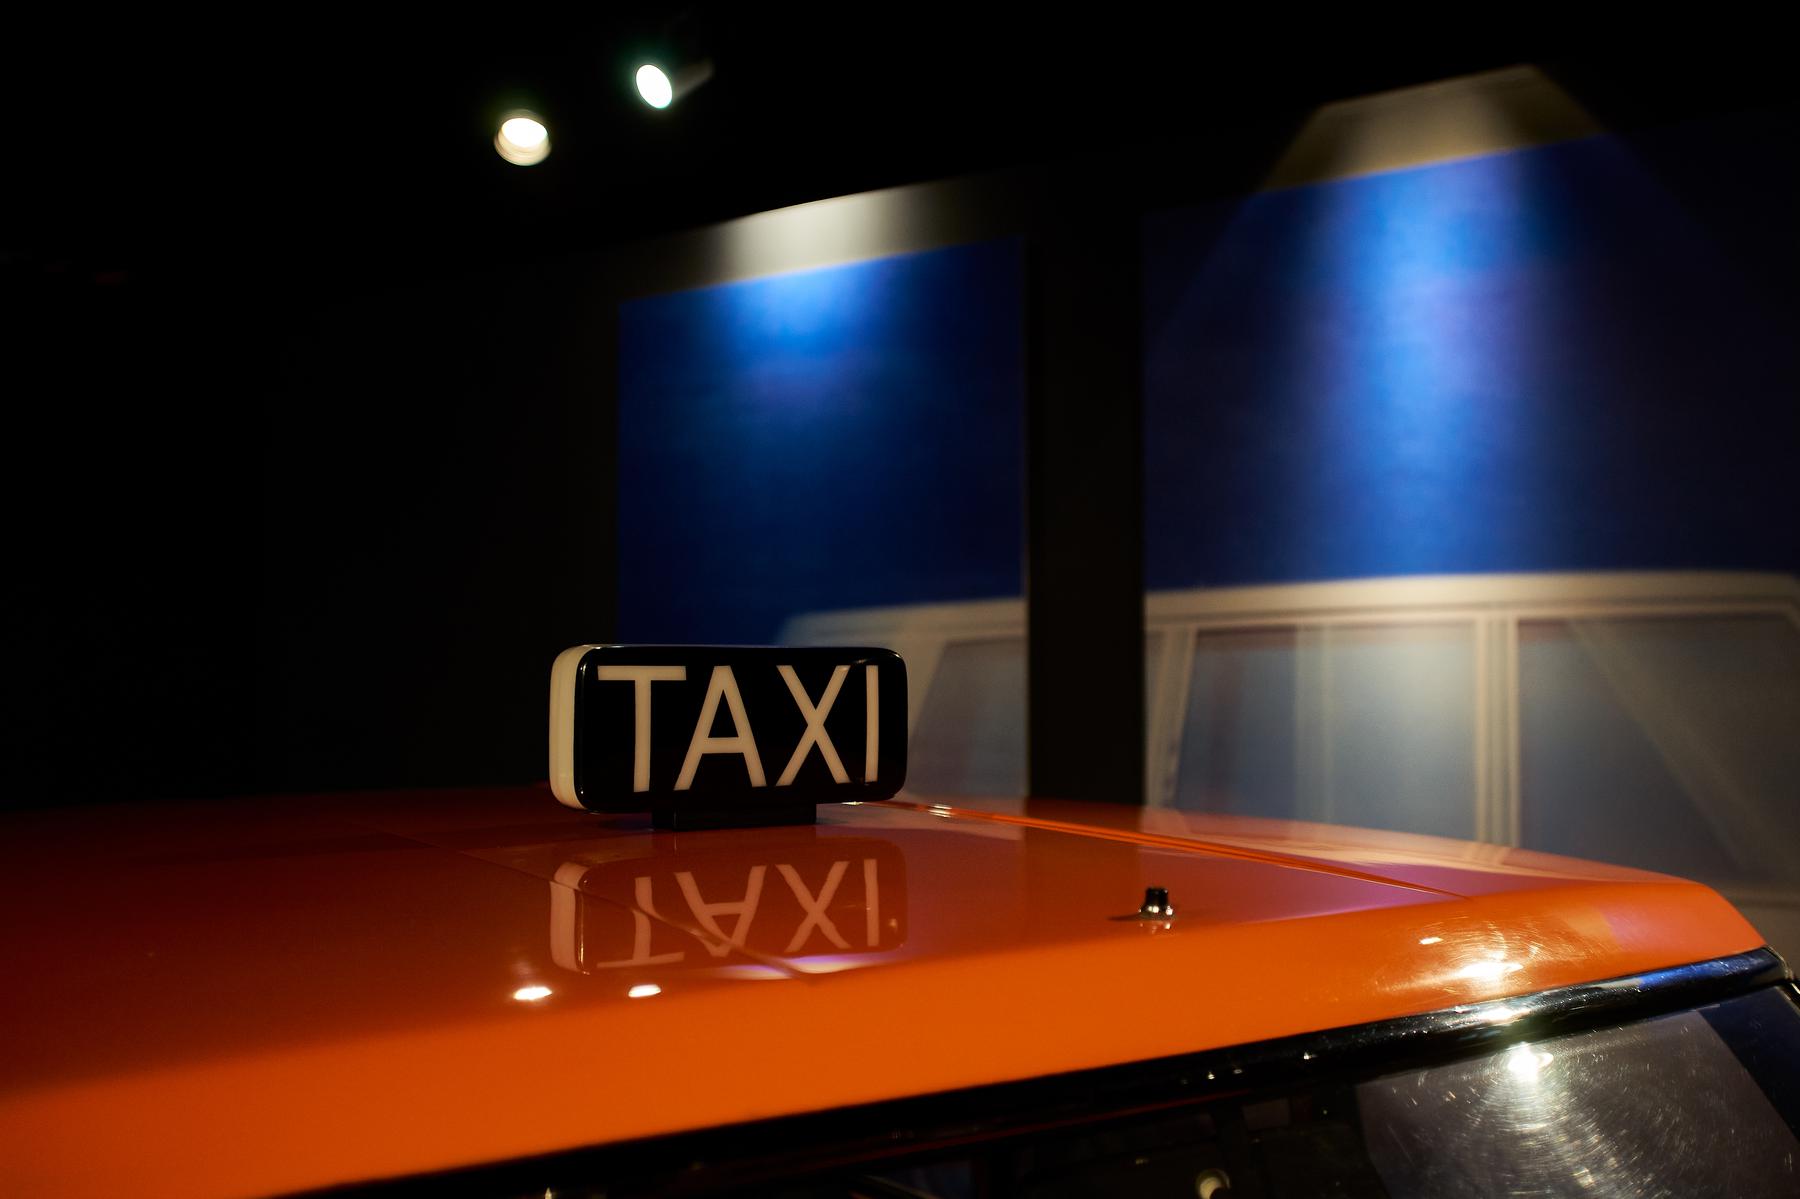 Protótipo de Manzù para o Fiat City Taxi em destaque na exposição "Che macchina!” (“Que carro!”) 17